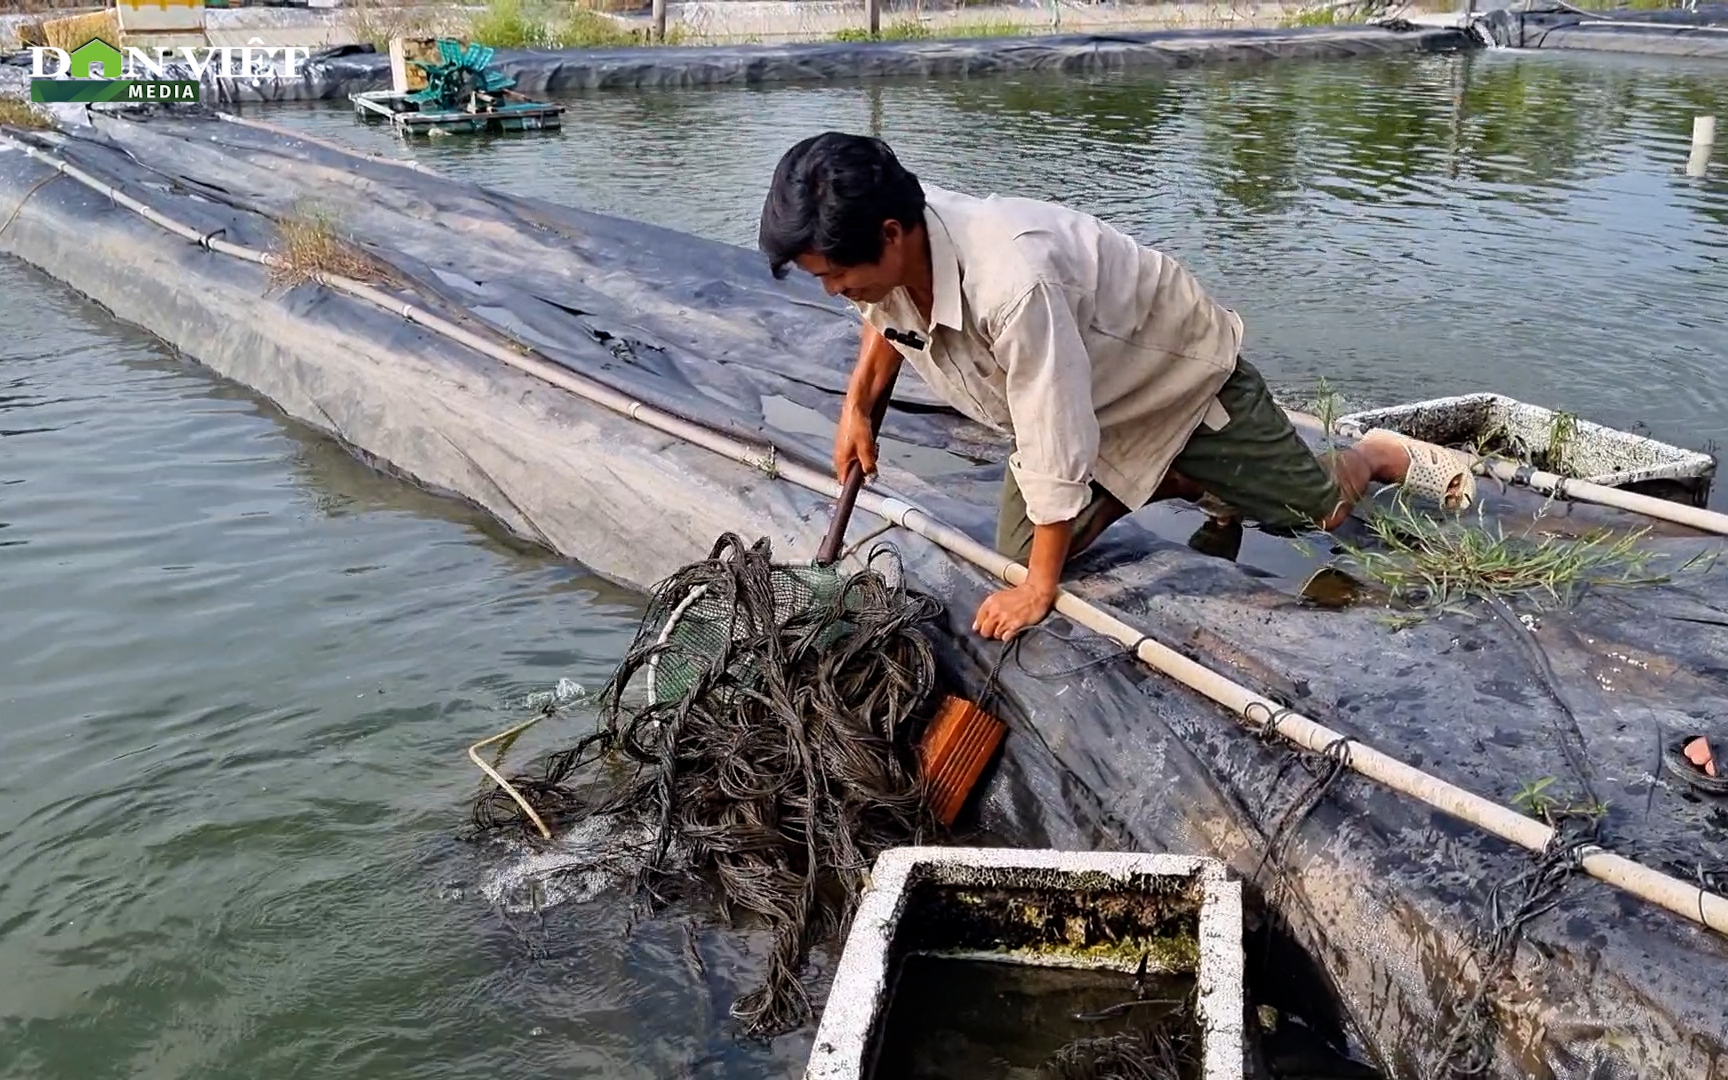 Nuôi cá chạch lấu trong bể xi măng lót bạt, anh nông dân ở Hậu Giang thu lợi nhuận hàng tỉ đồng mỗi năm